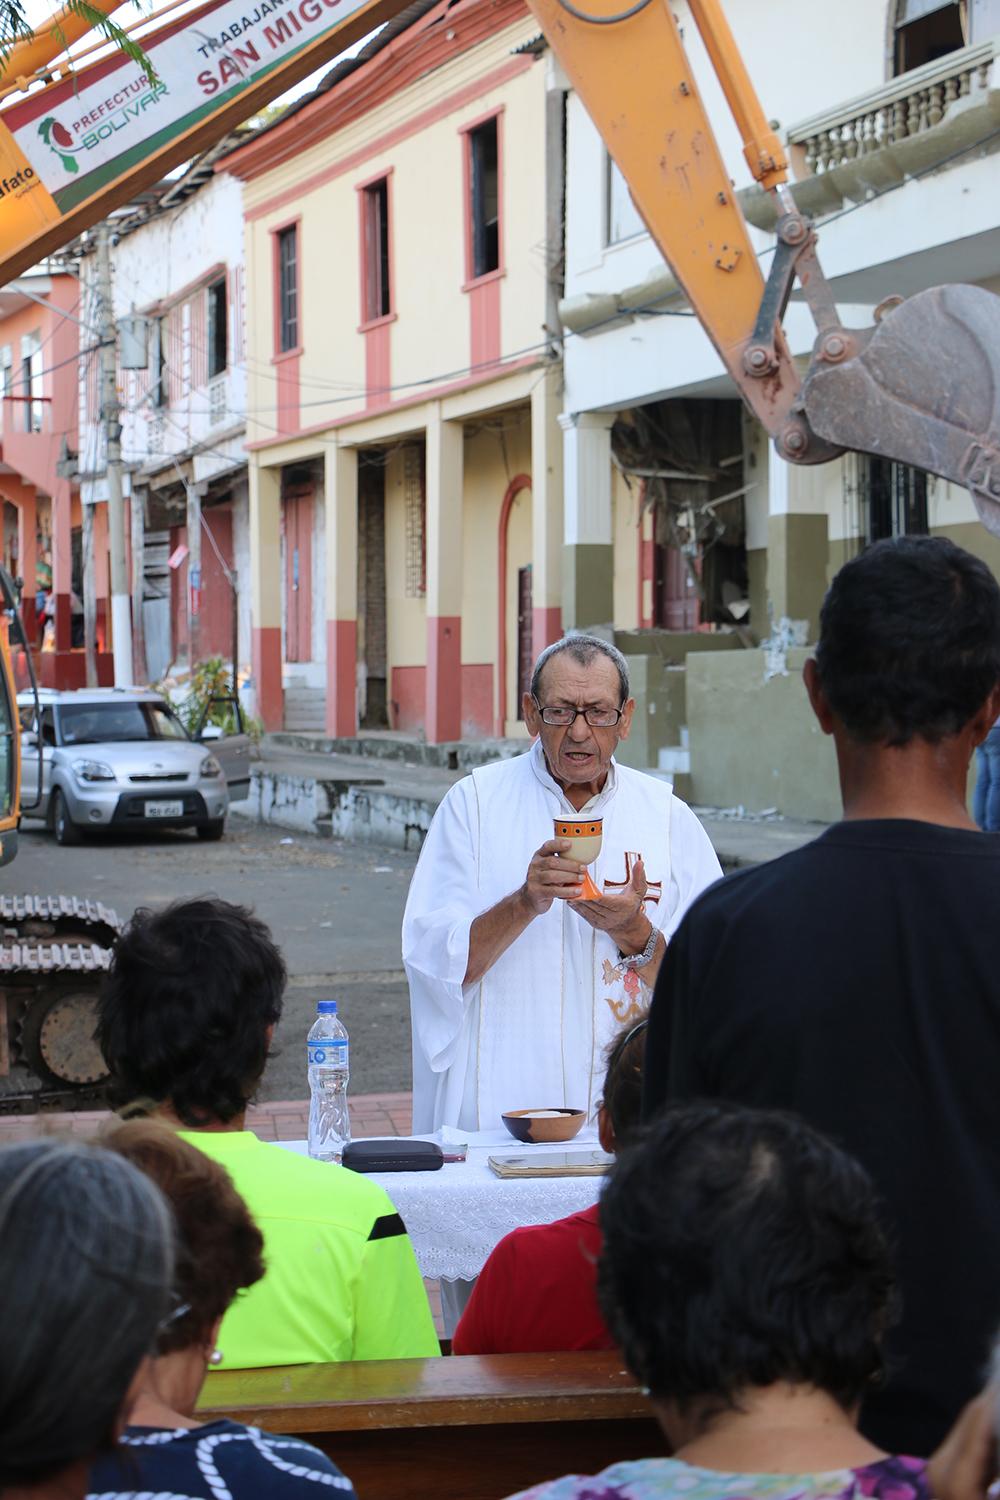  El padre Benjamín Ramos preside la misa diaria de las 17h00 frente a la Iglesia de la Merced | Foto: M. Ayala 